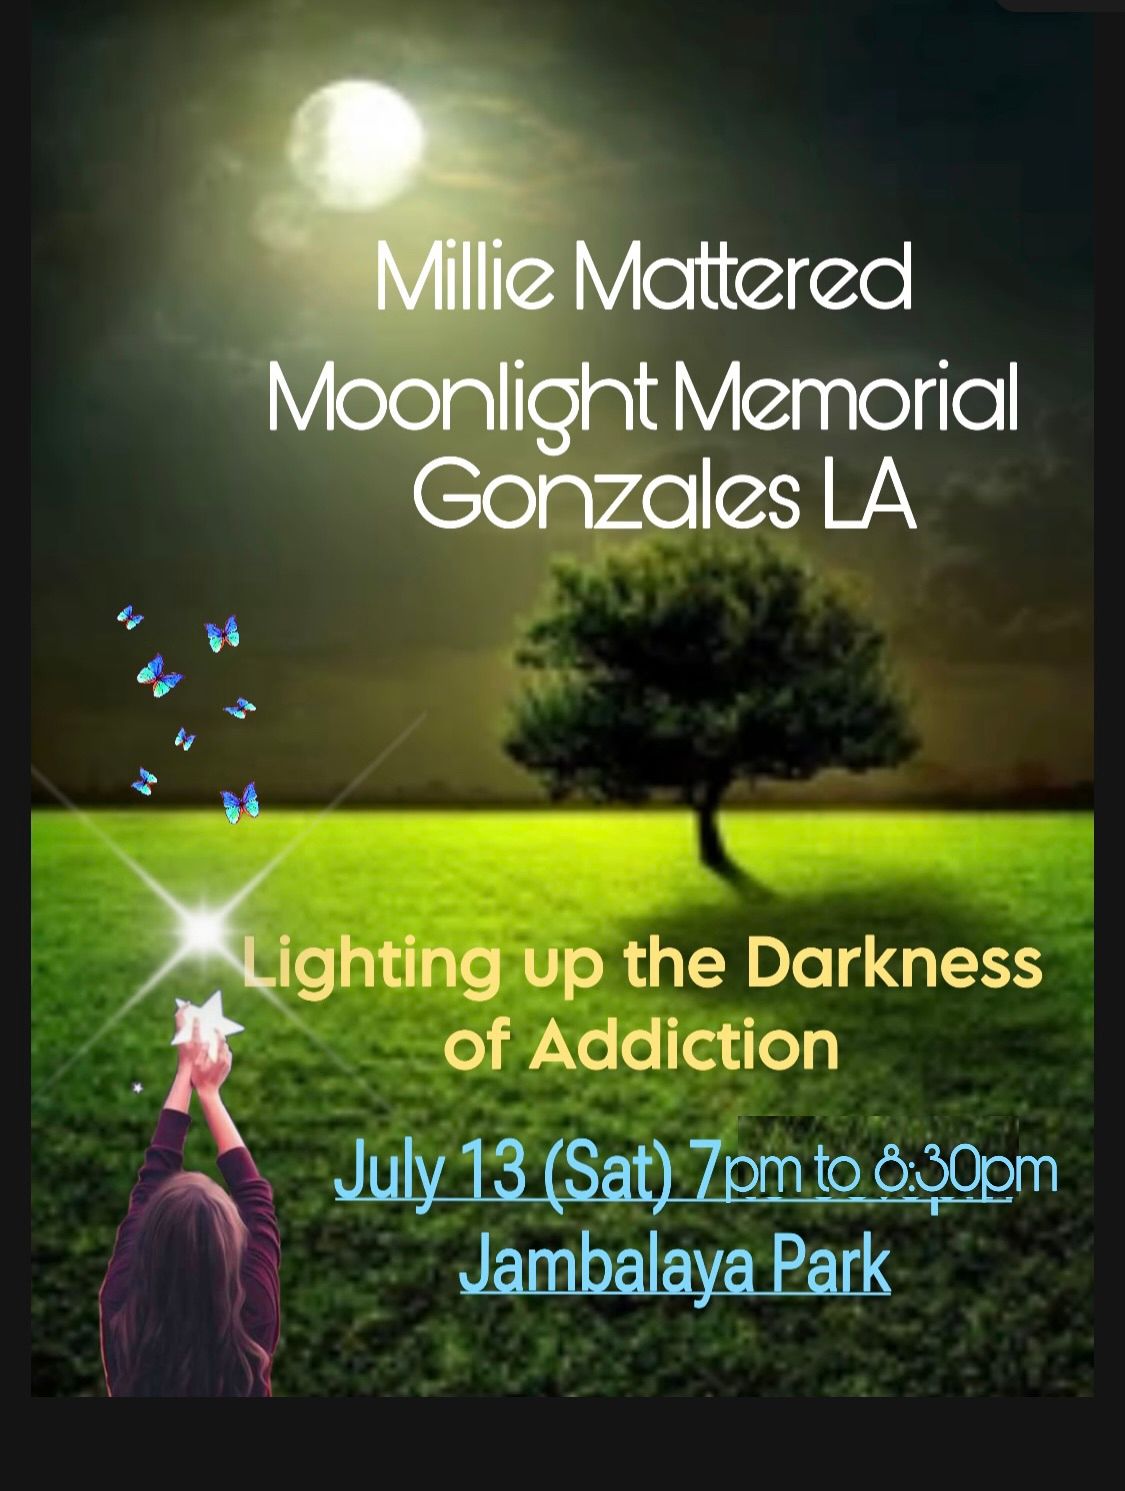 Gonzales Moonlight Memorial 